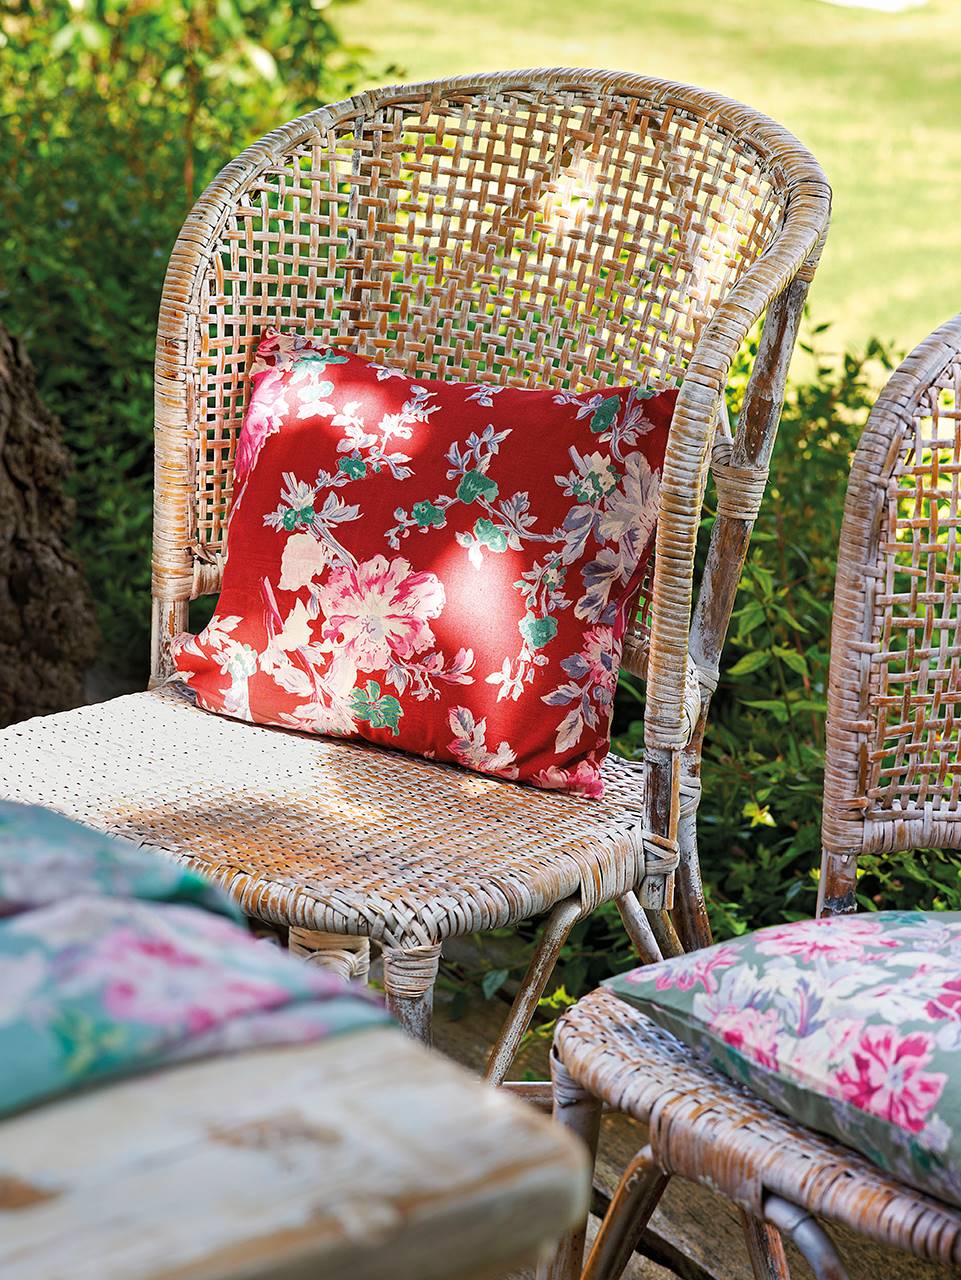 Detalle de cojines con estampado floral sobre una silla